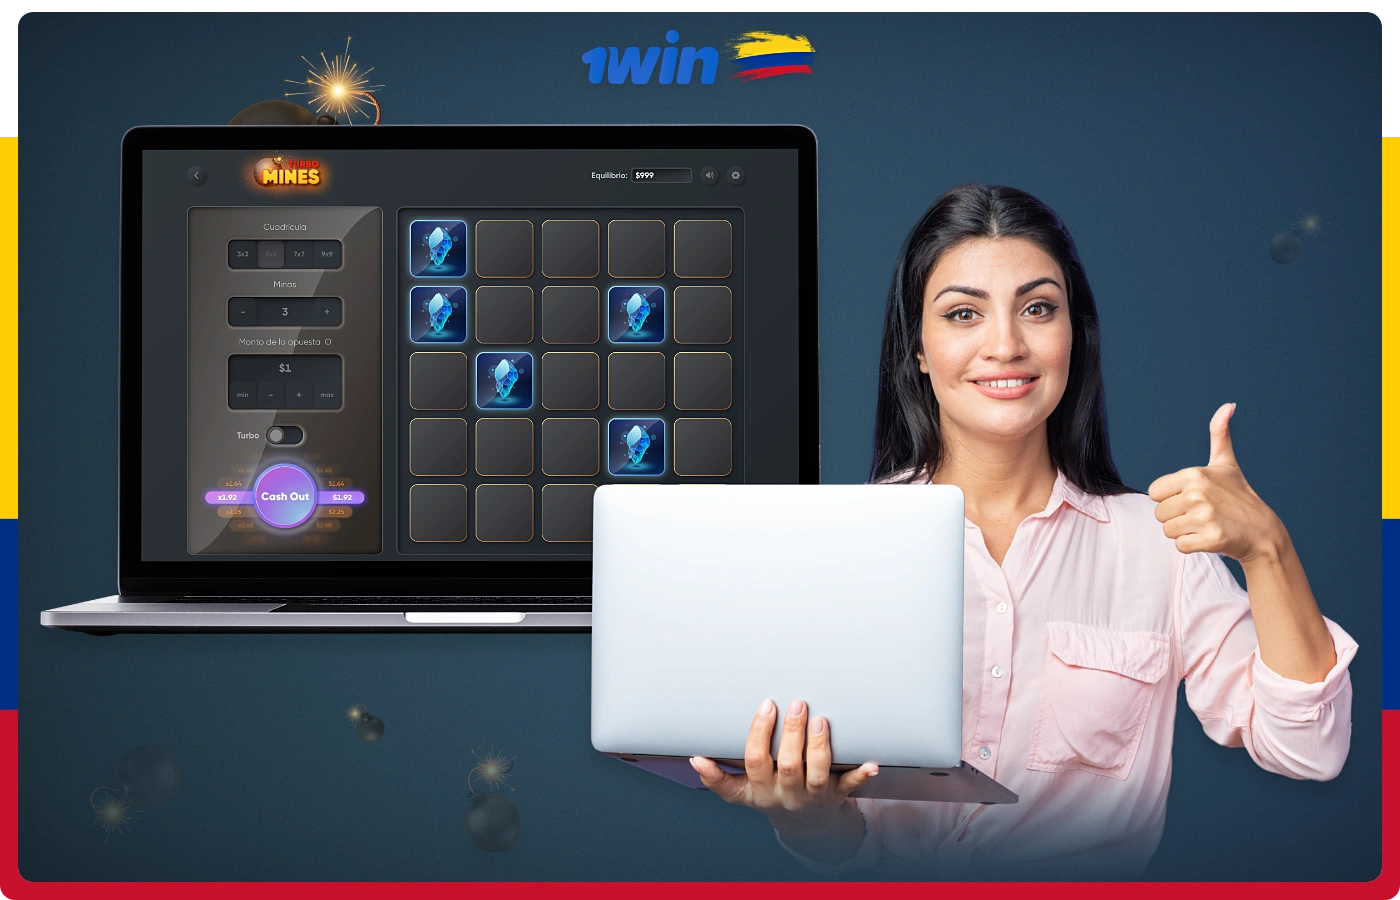 Las principales características de los juegos de minero de 1win incluyen reglas sencillas y una interfaz intuitiva, así como la posibilidad de jugar desde el móvil y el PC